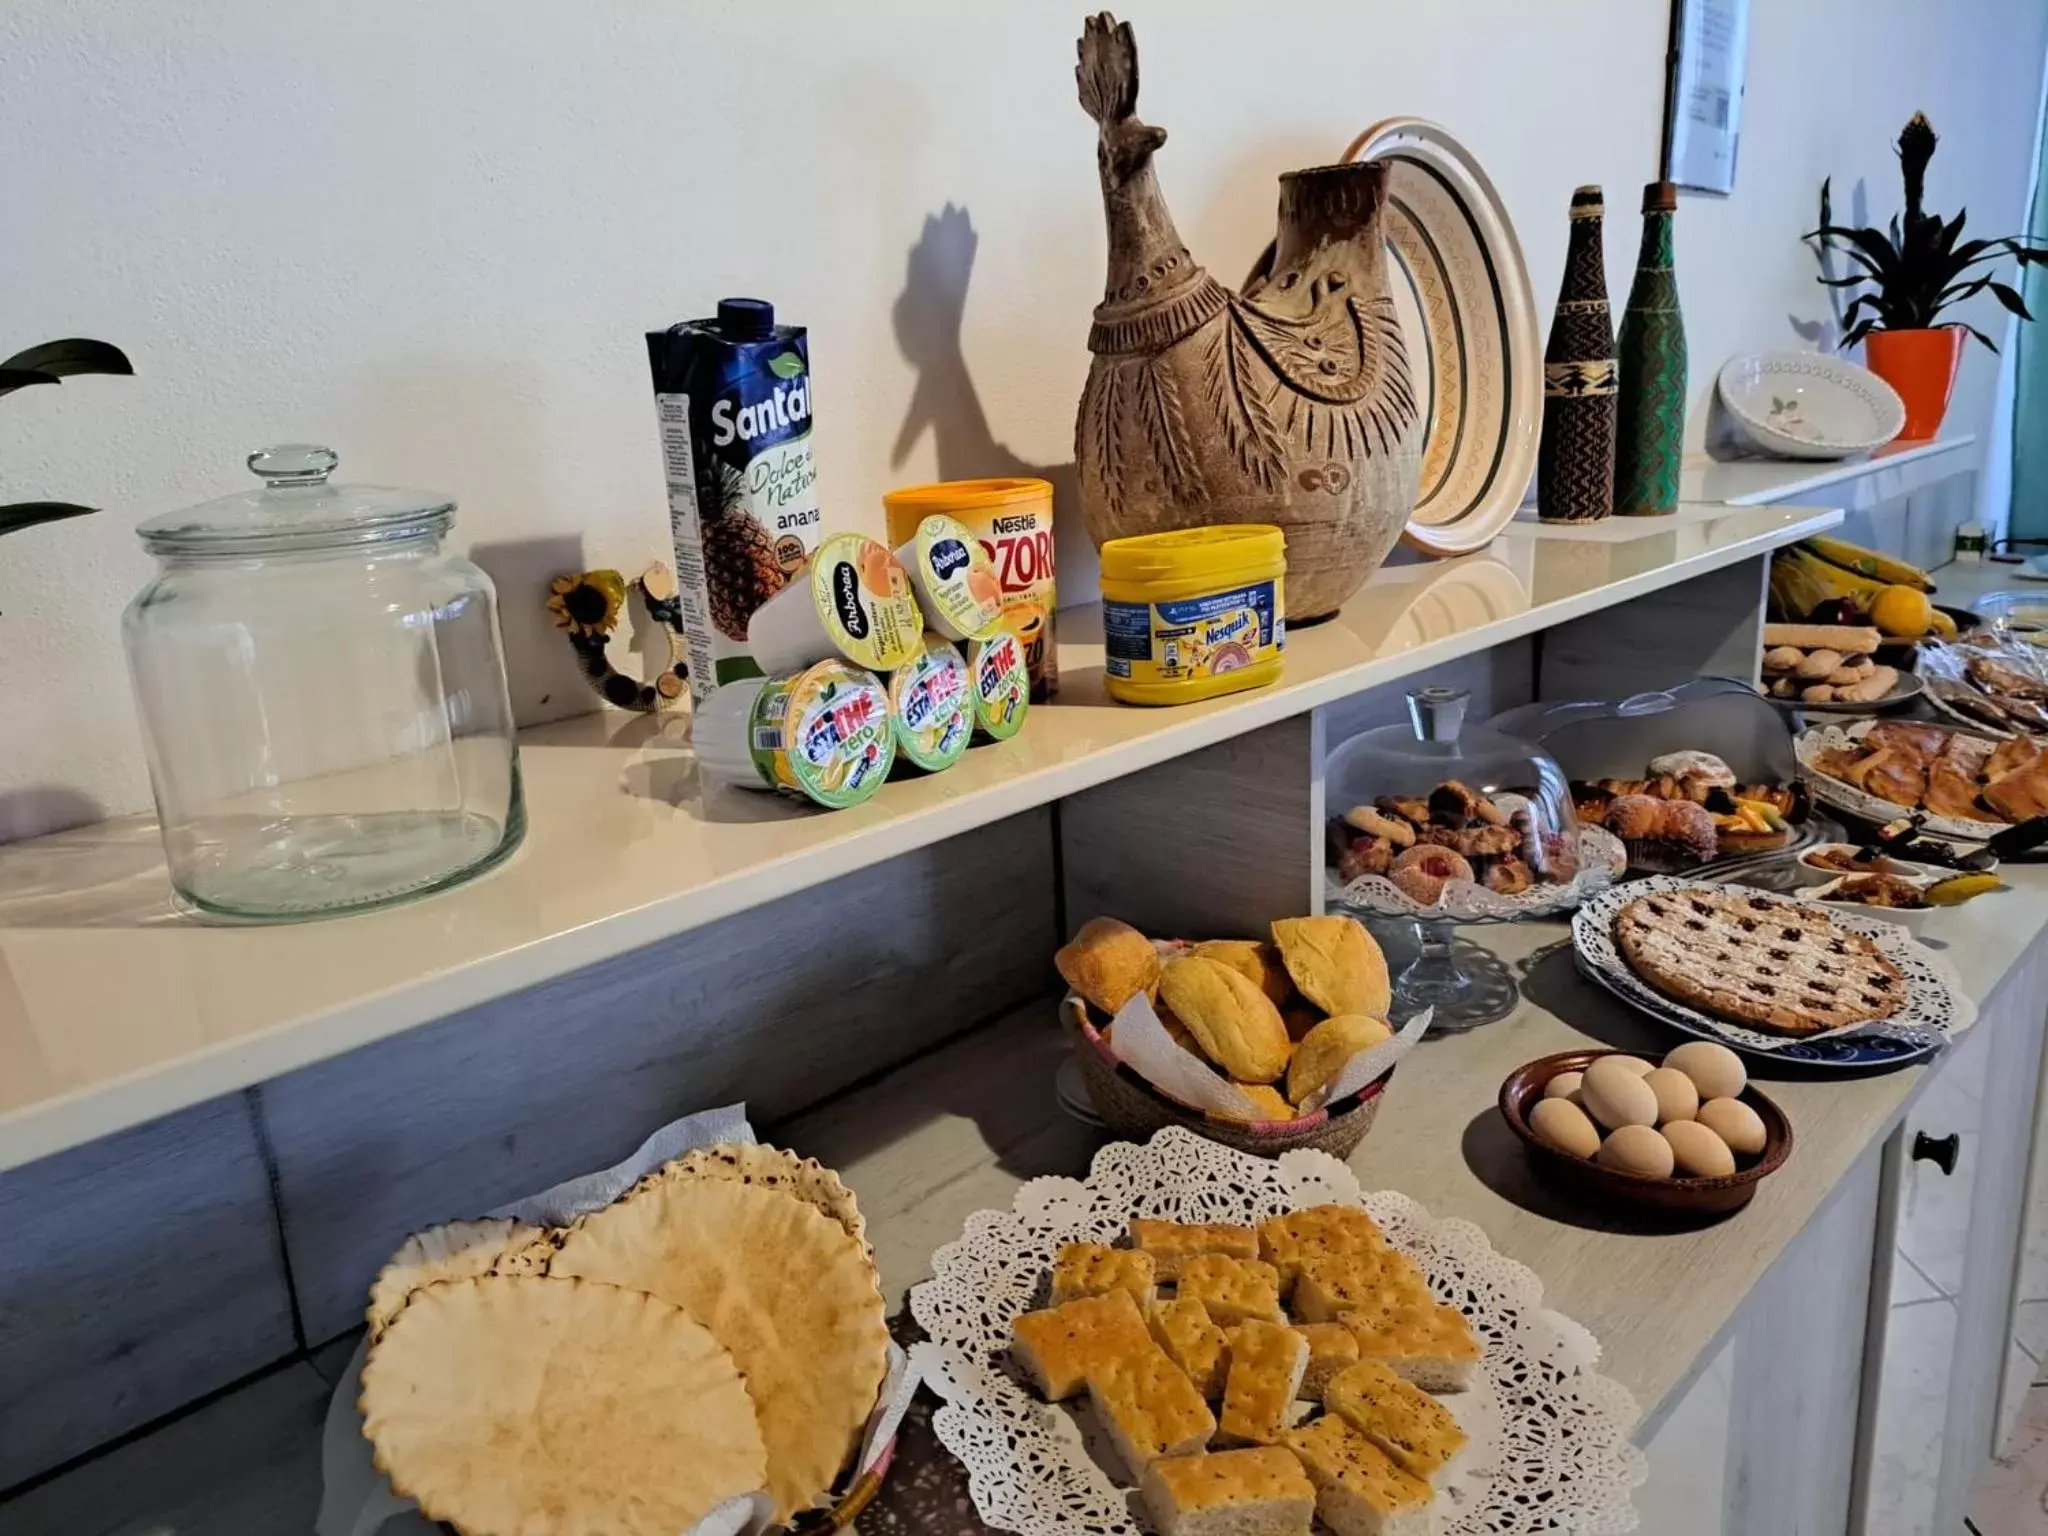 Buffet breakfast in L'ALGA